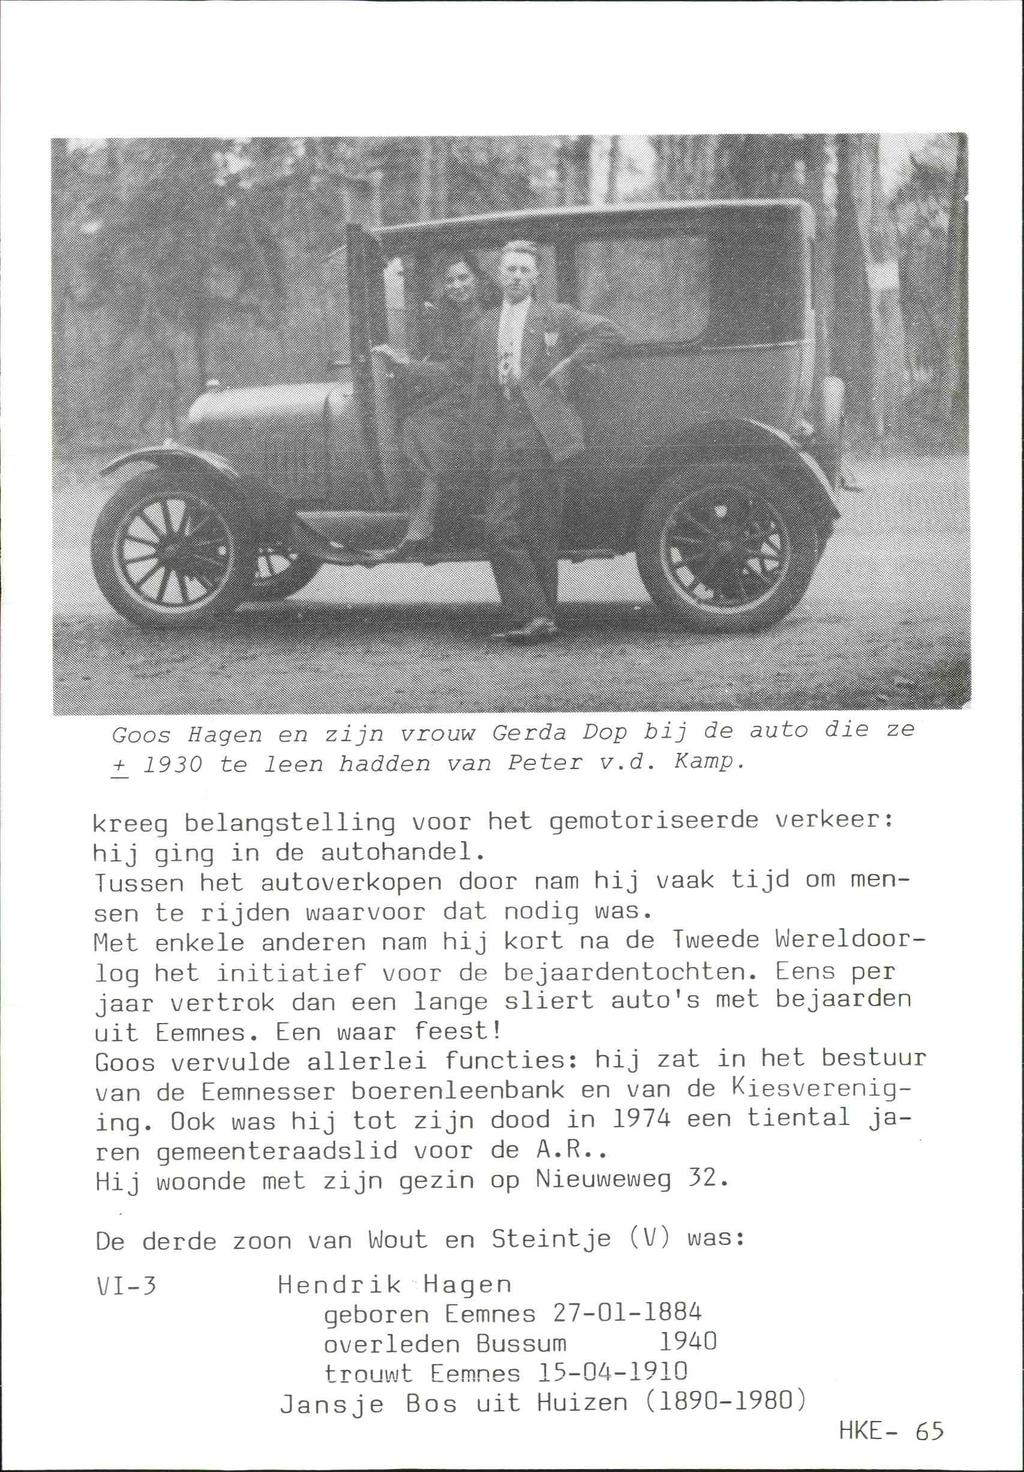 Goos Hagen en zijn vrouw Gerda Dop bij de auto die ze +_ 1930 te leen hadden van Peter v.d. Kamp. kreeg belangstelling voor het gemotoriseerde verkeer: hij ging in de autohandel.